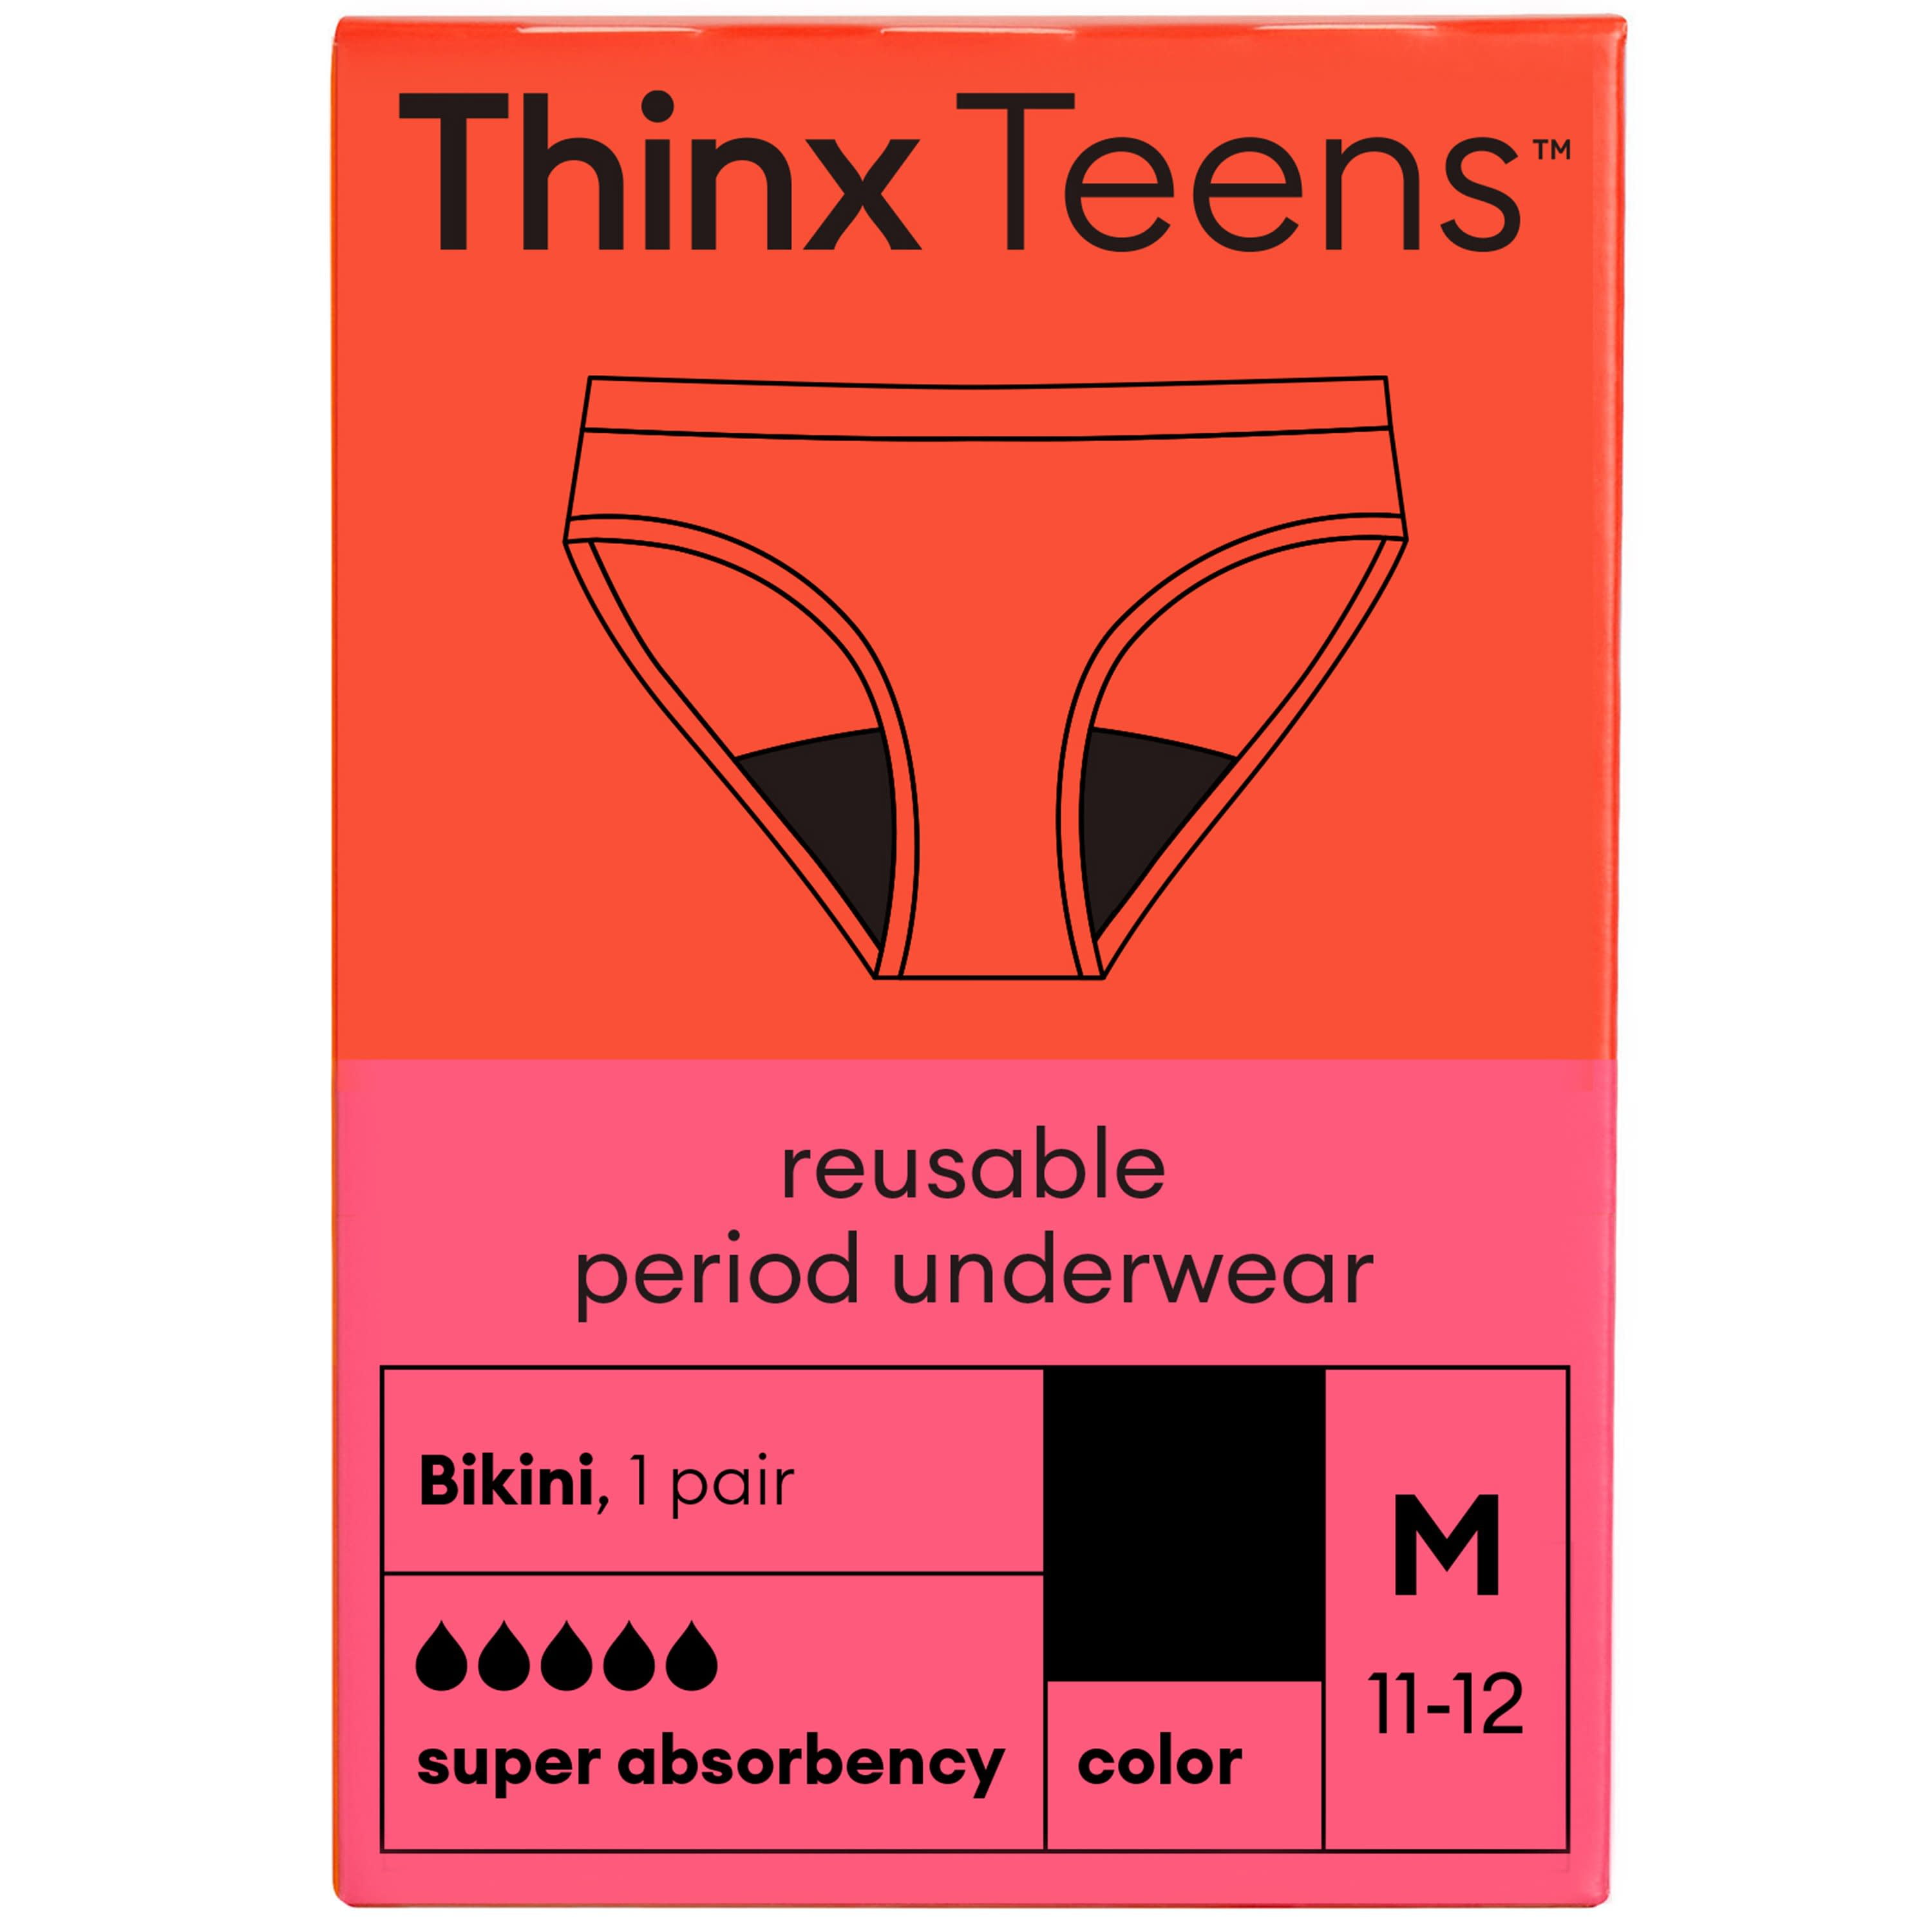 Thinx Teens Super Absorbency Cotton Brief Period Underwear, Black 